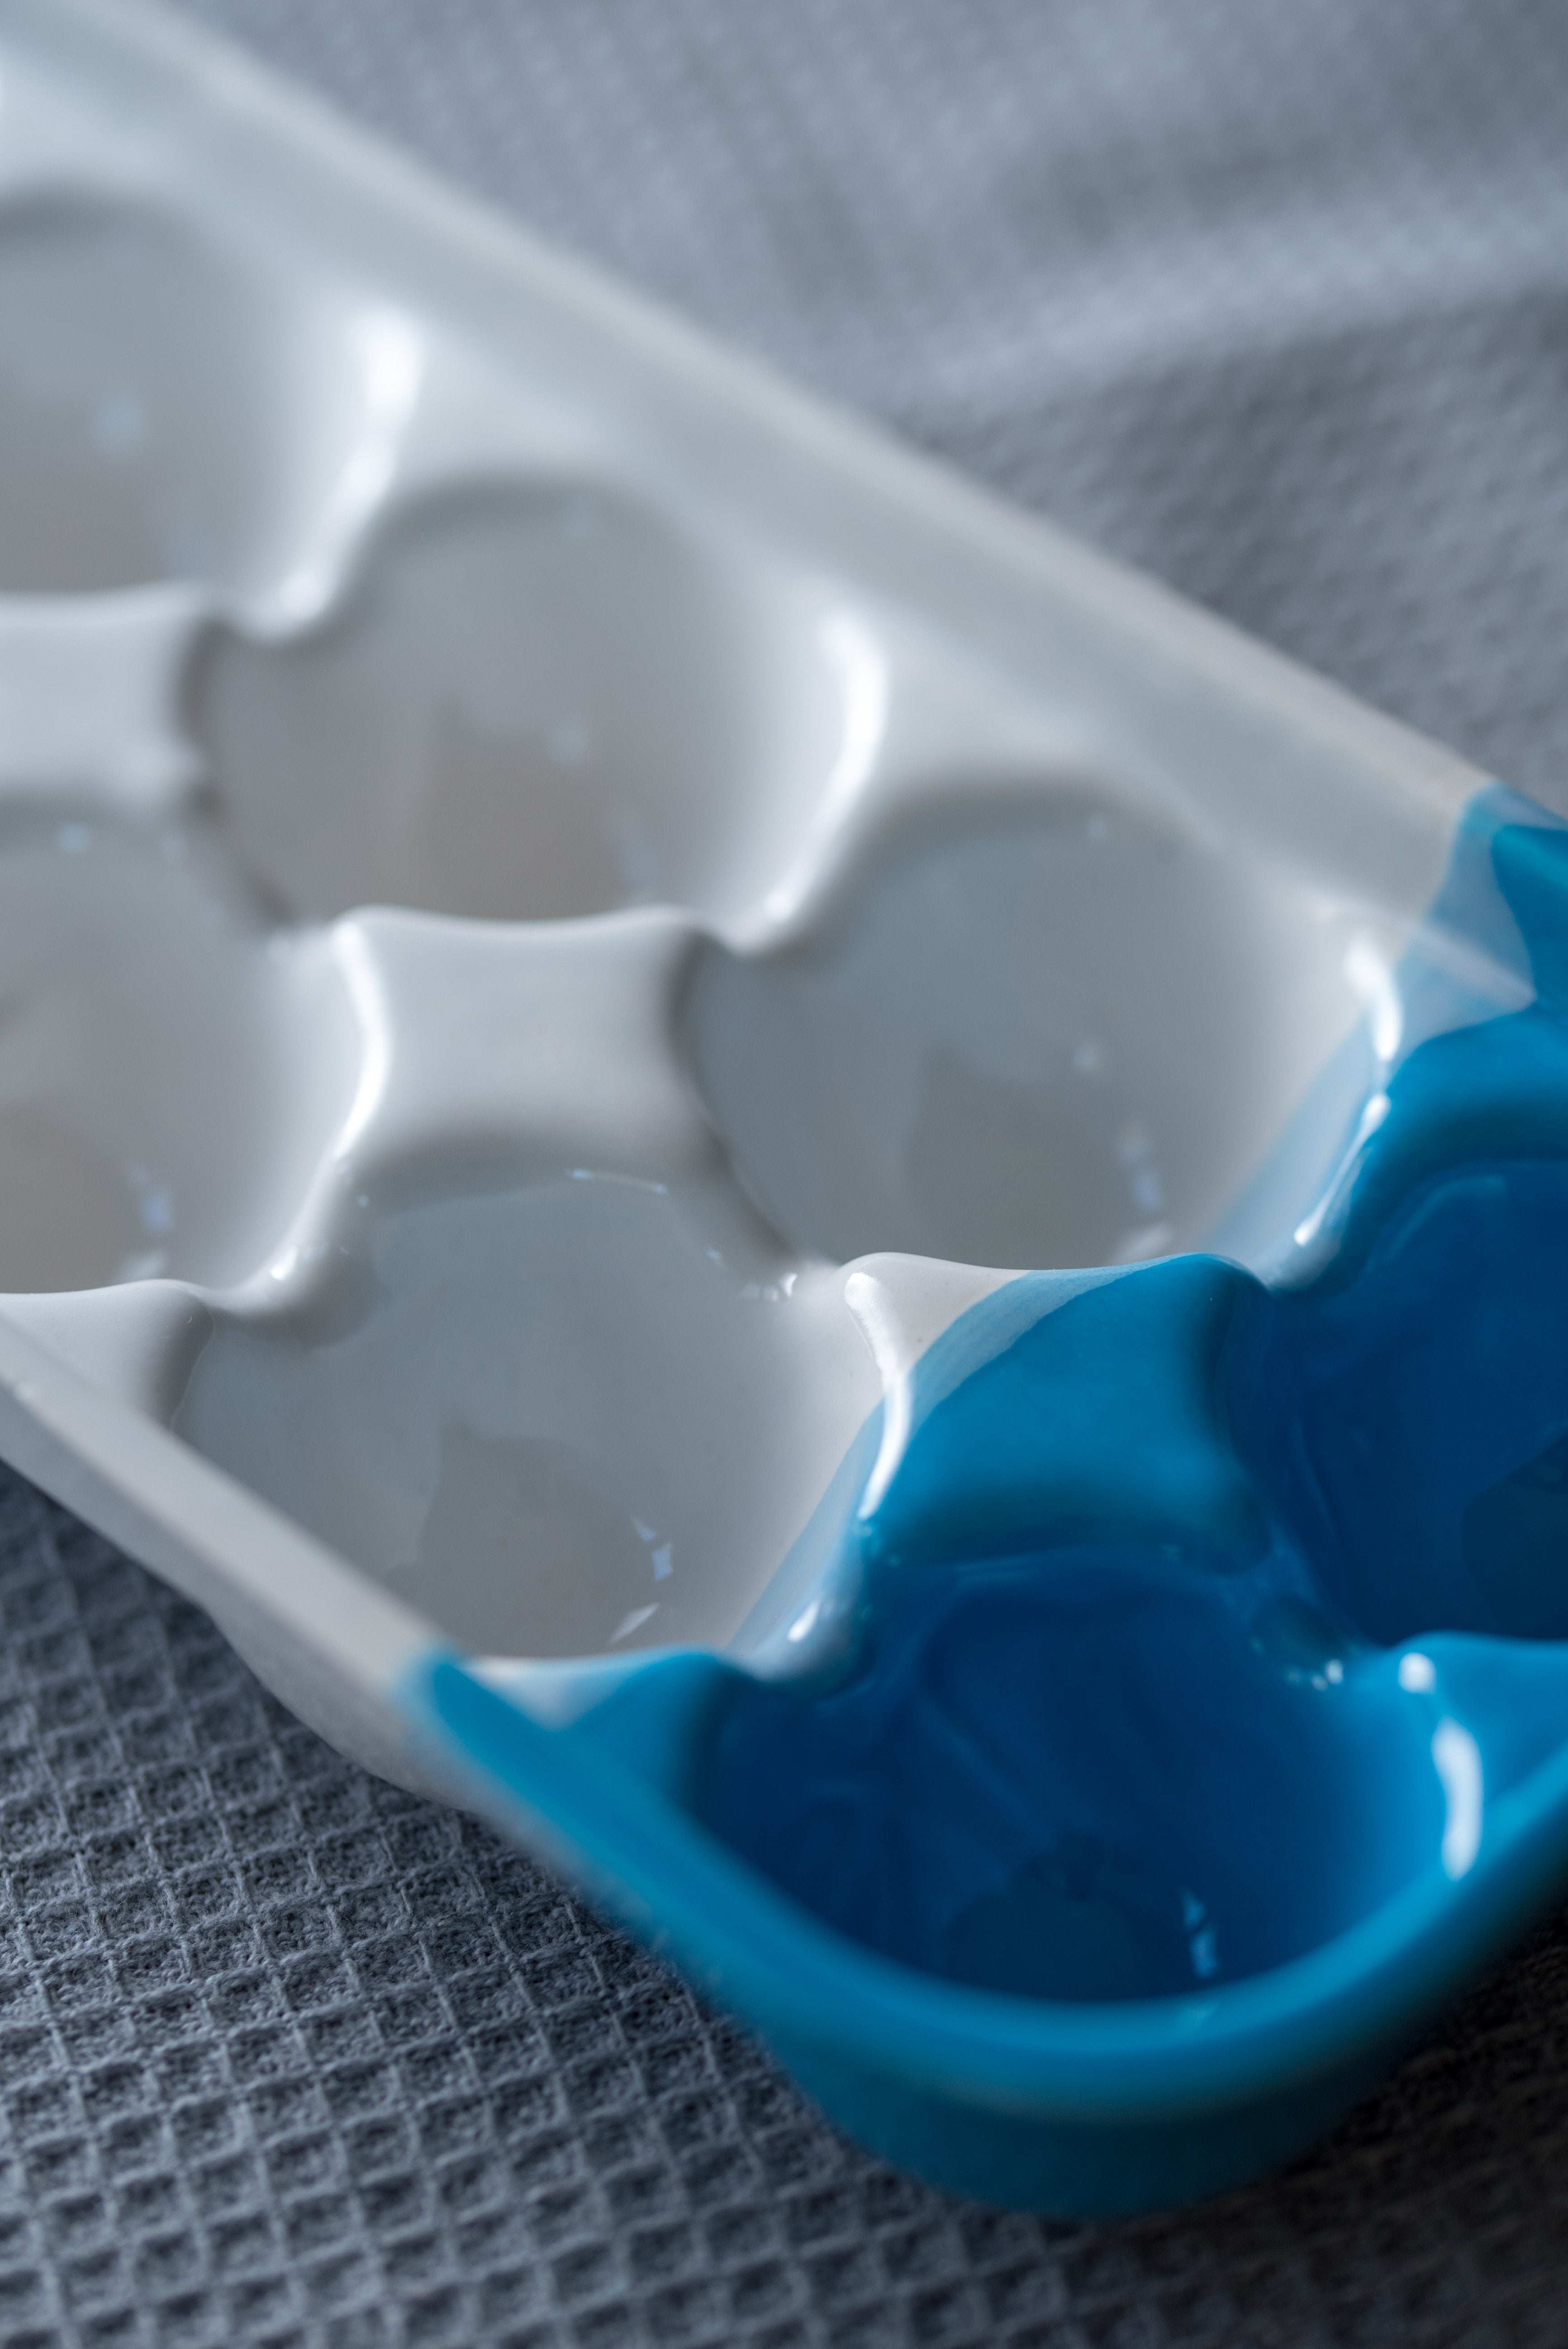 Porcelain ombre egg tray - ZLATNAporcelain